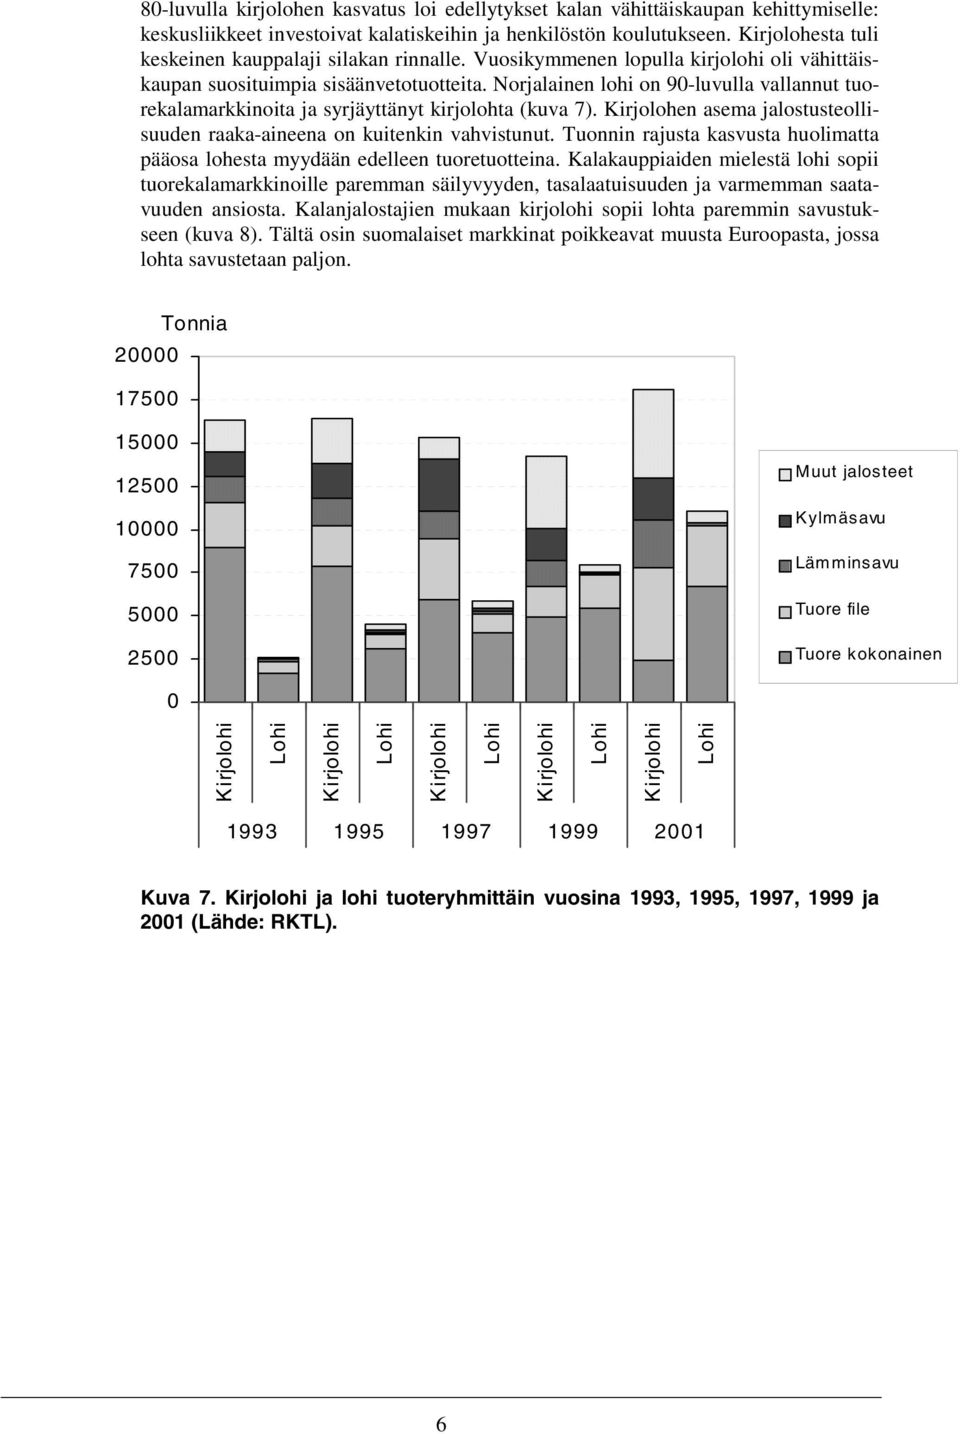 Norjalainen lohi on 90-luvulla vallannut tuorekalamarkkinoita ja syrjäyttänyt kirjolohta (kuva 7). Kirjolohen asema jalostusteollisuuden raaka-aineena on kuitenkin vahvistunut.